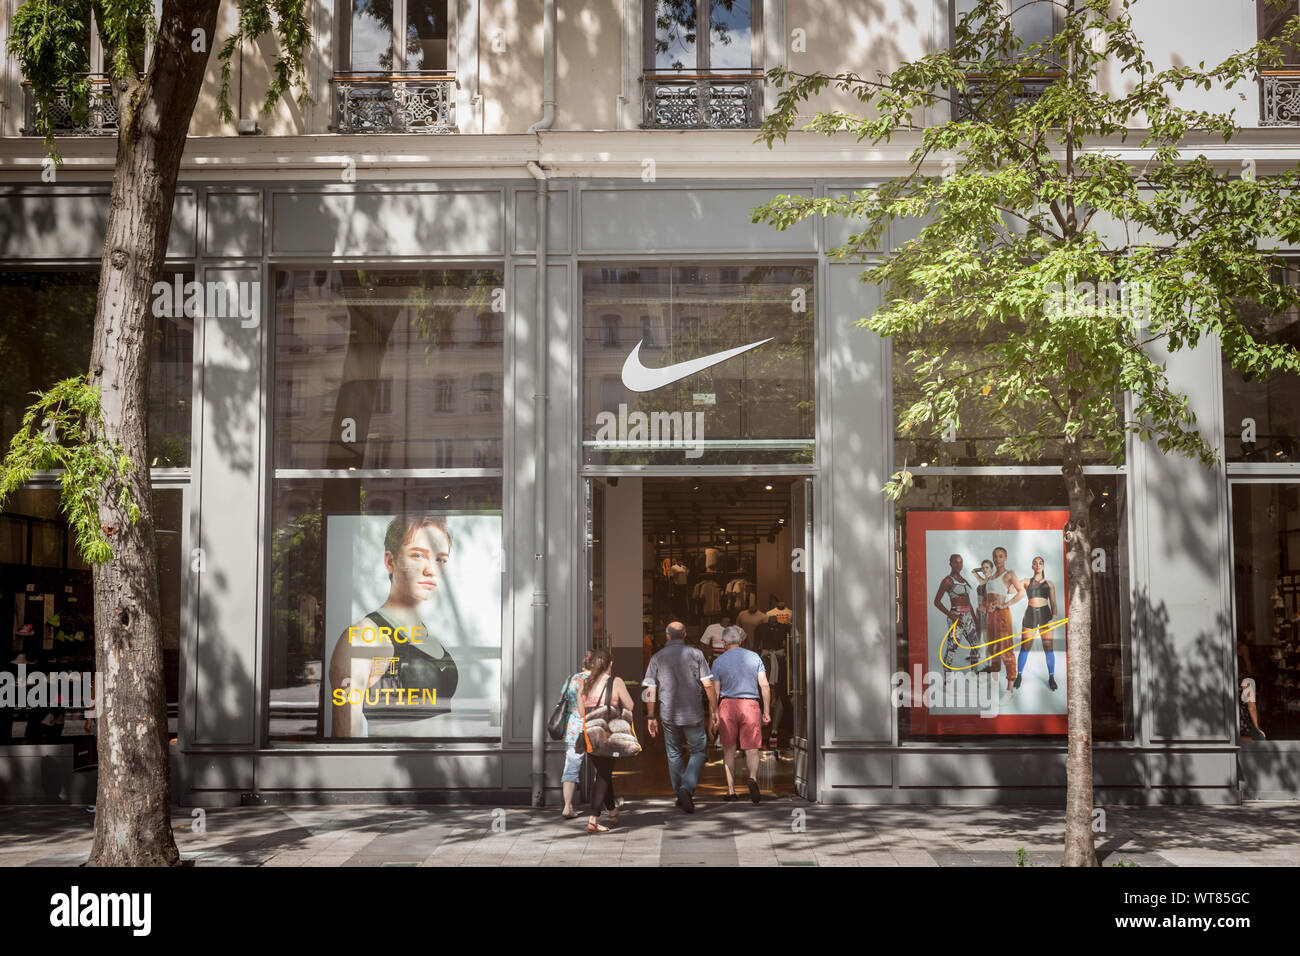 LYON, Frankreich - 13. JULI 2019: Nike Logo auf ihren wichtigsten Store für  Lyon. Nike ist eine amerikanische Marke Sportbekleidung und Schuhe, berühmt  für seine Athleti Stockfotografie - Alamy